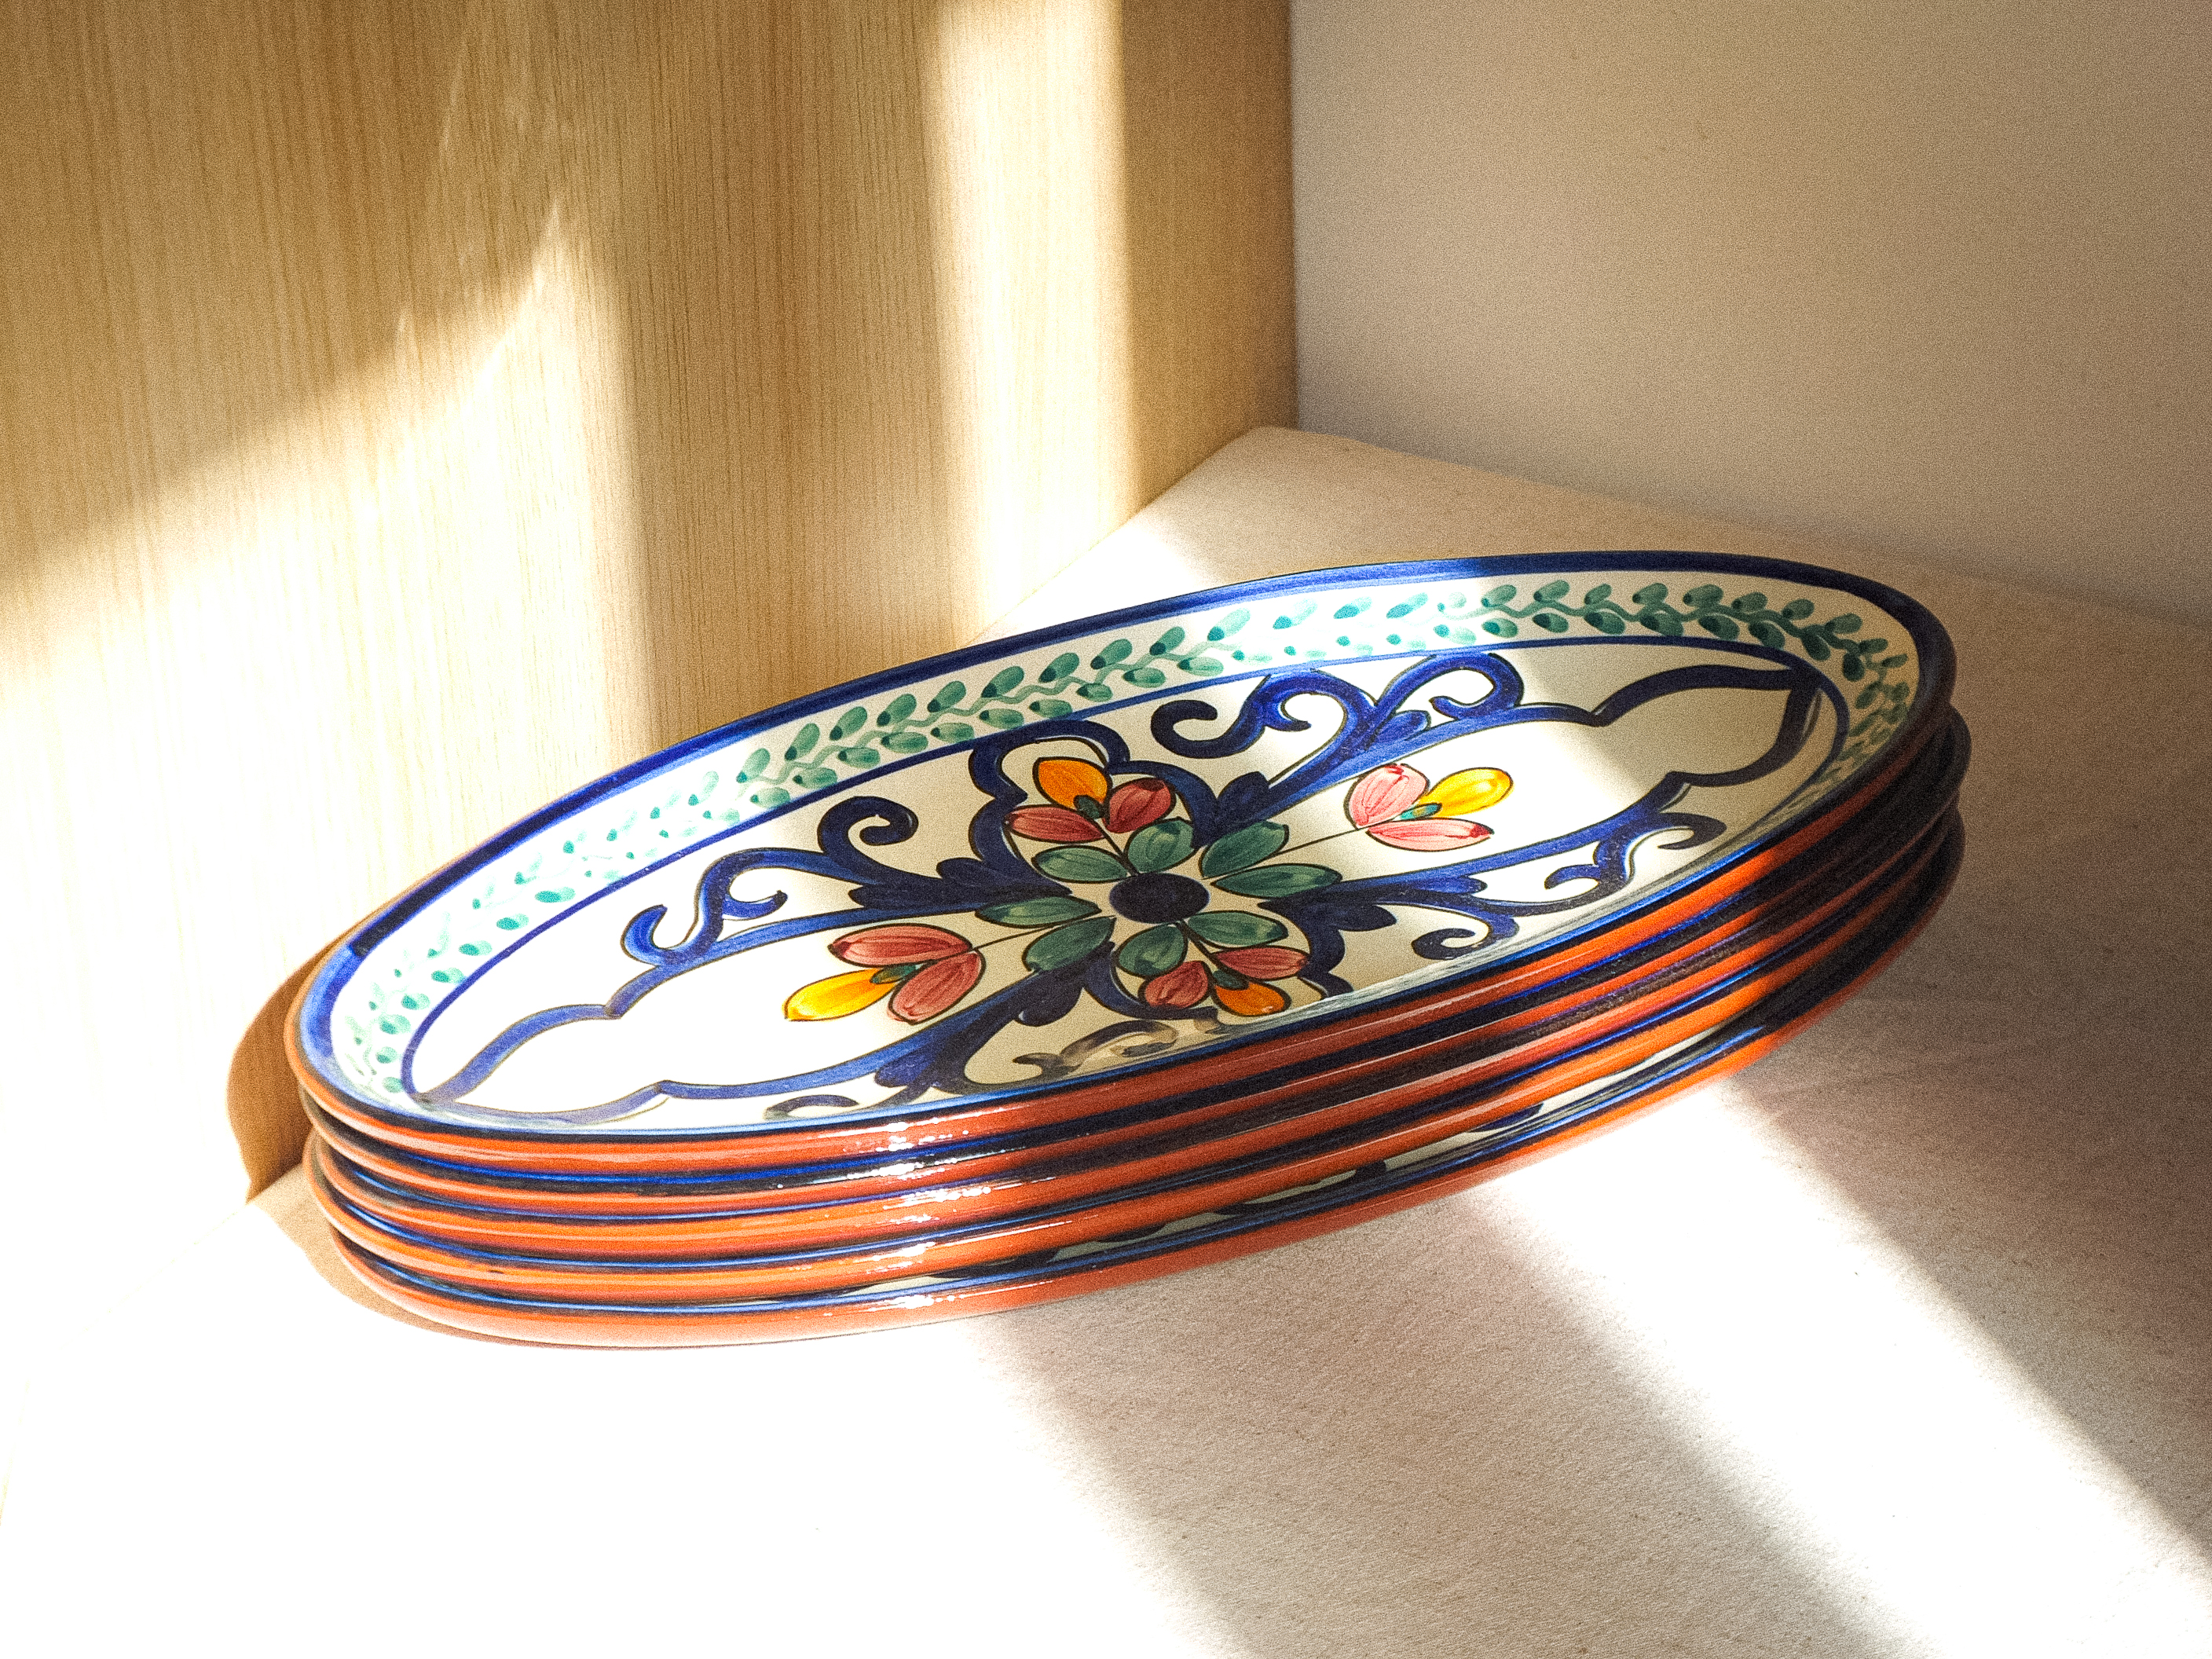 Collection de vaisselle artisanale en céramique, aux motifs colorés et traditionnels